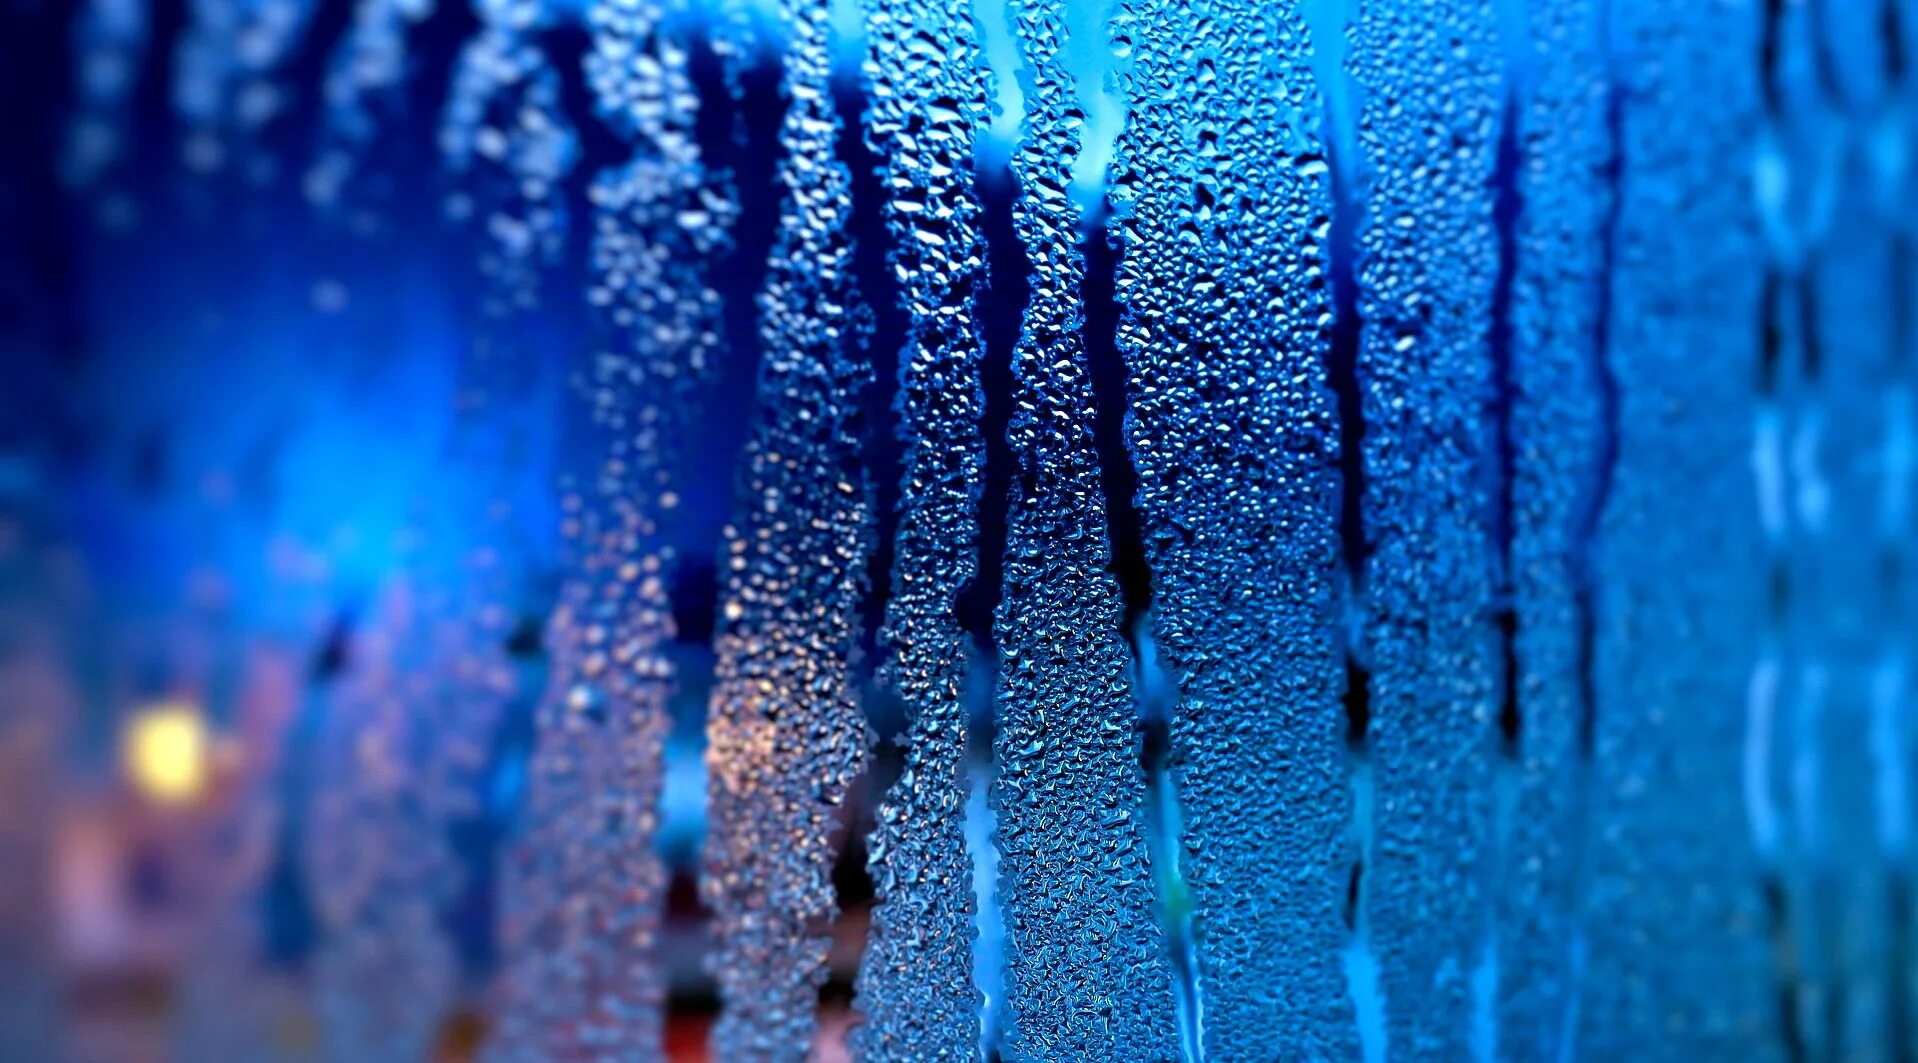 Капли дождя в воздухе. Капли на стекле. Синий дождь. Текстура стекла. Мокрое стекло.